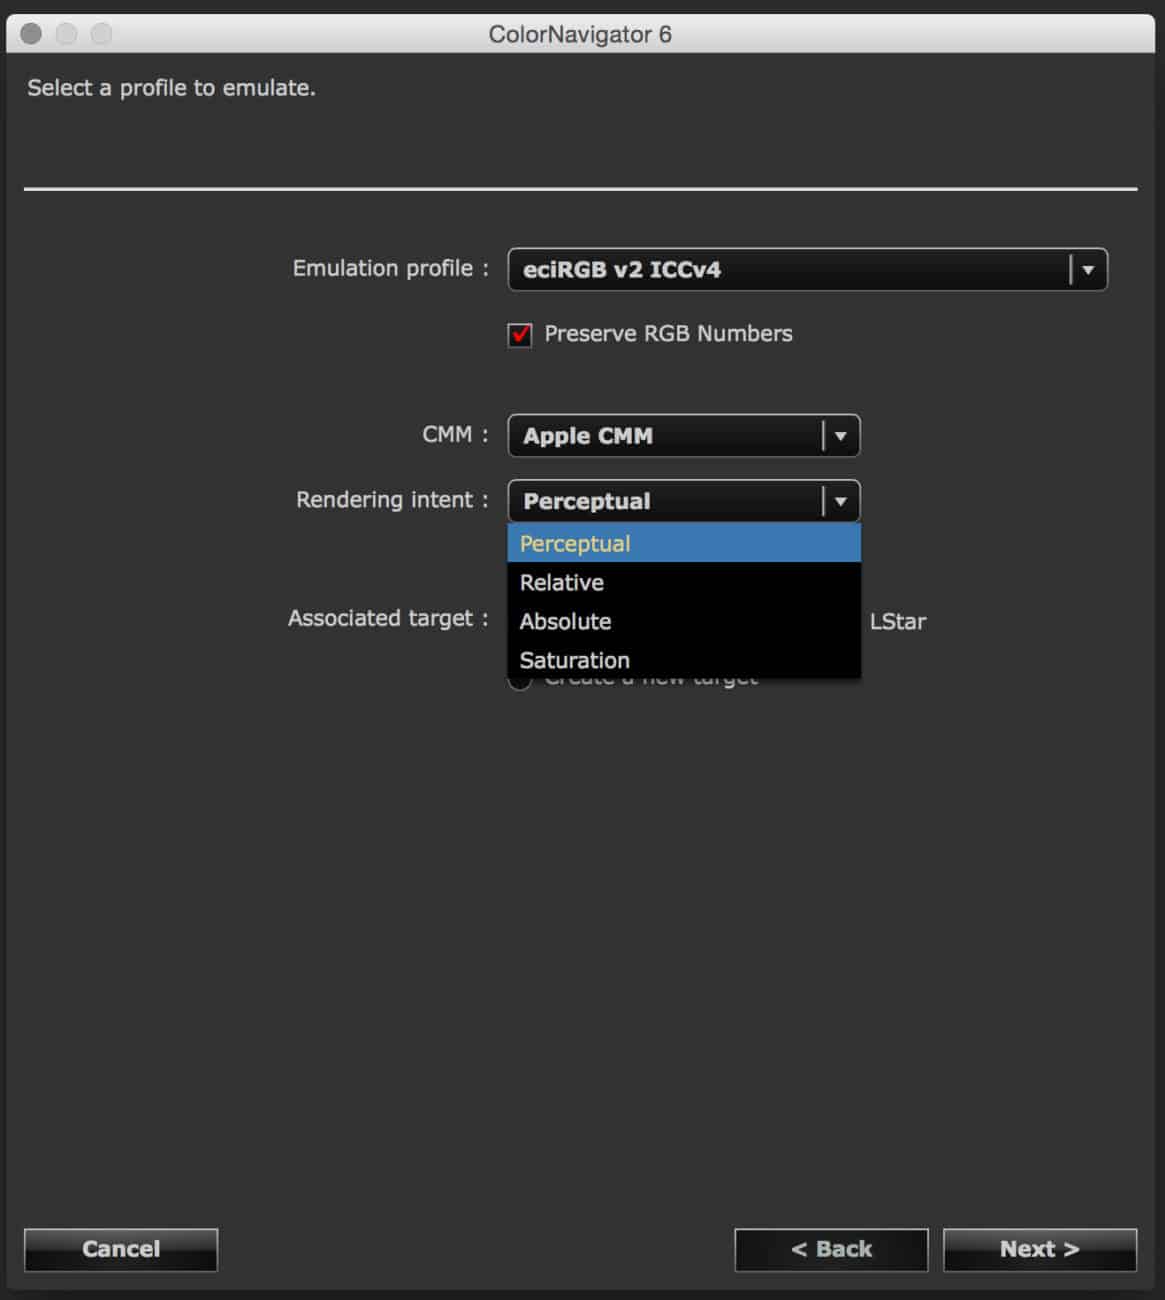 Color Navigator 6 – Emulation Profile Selection Rendering Intent